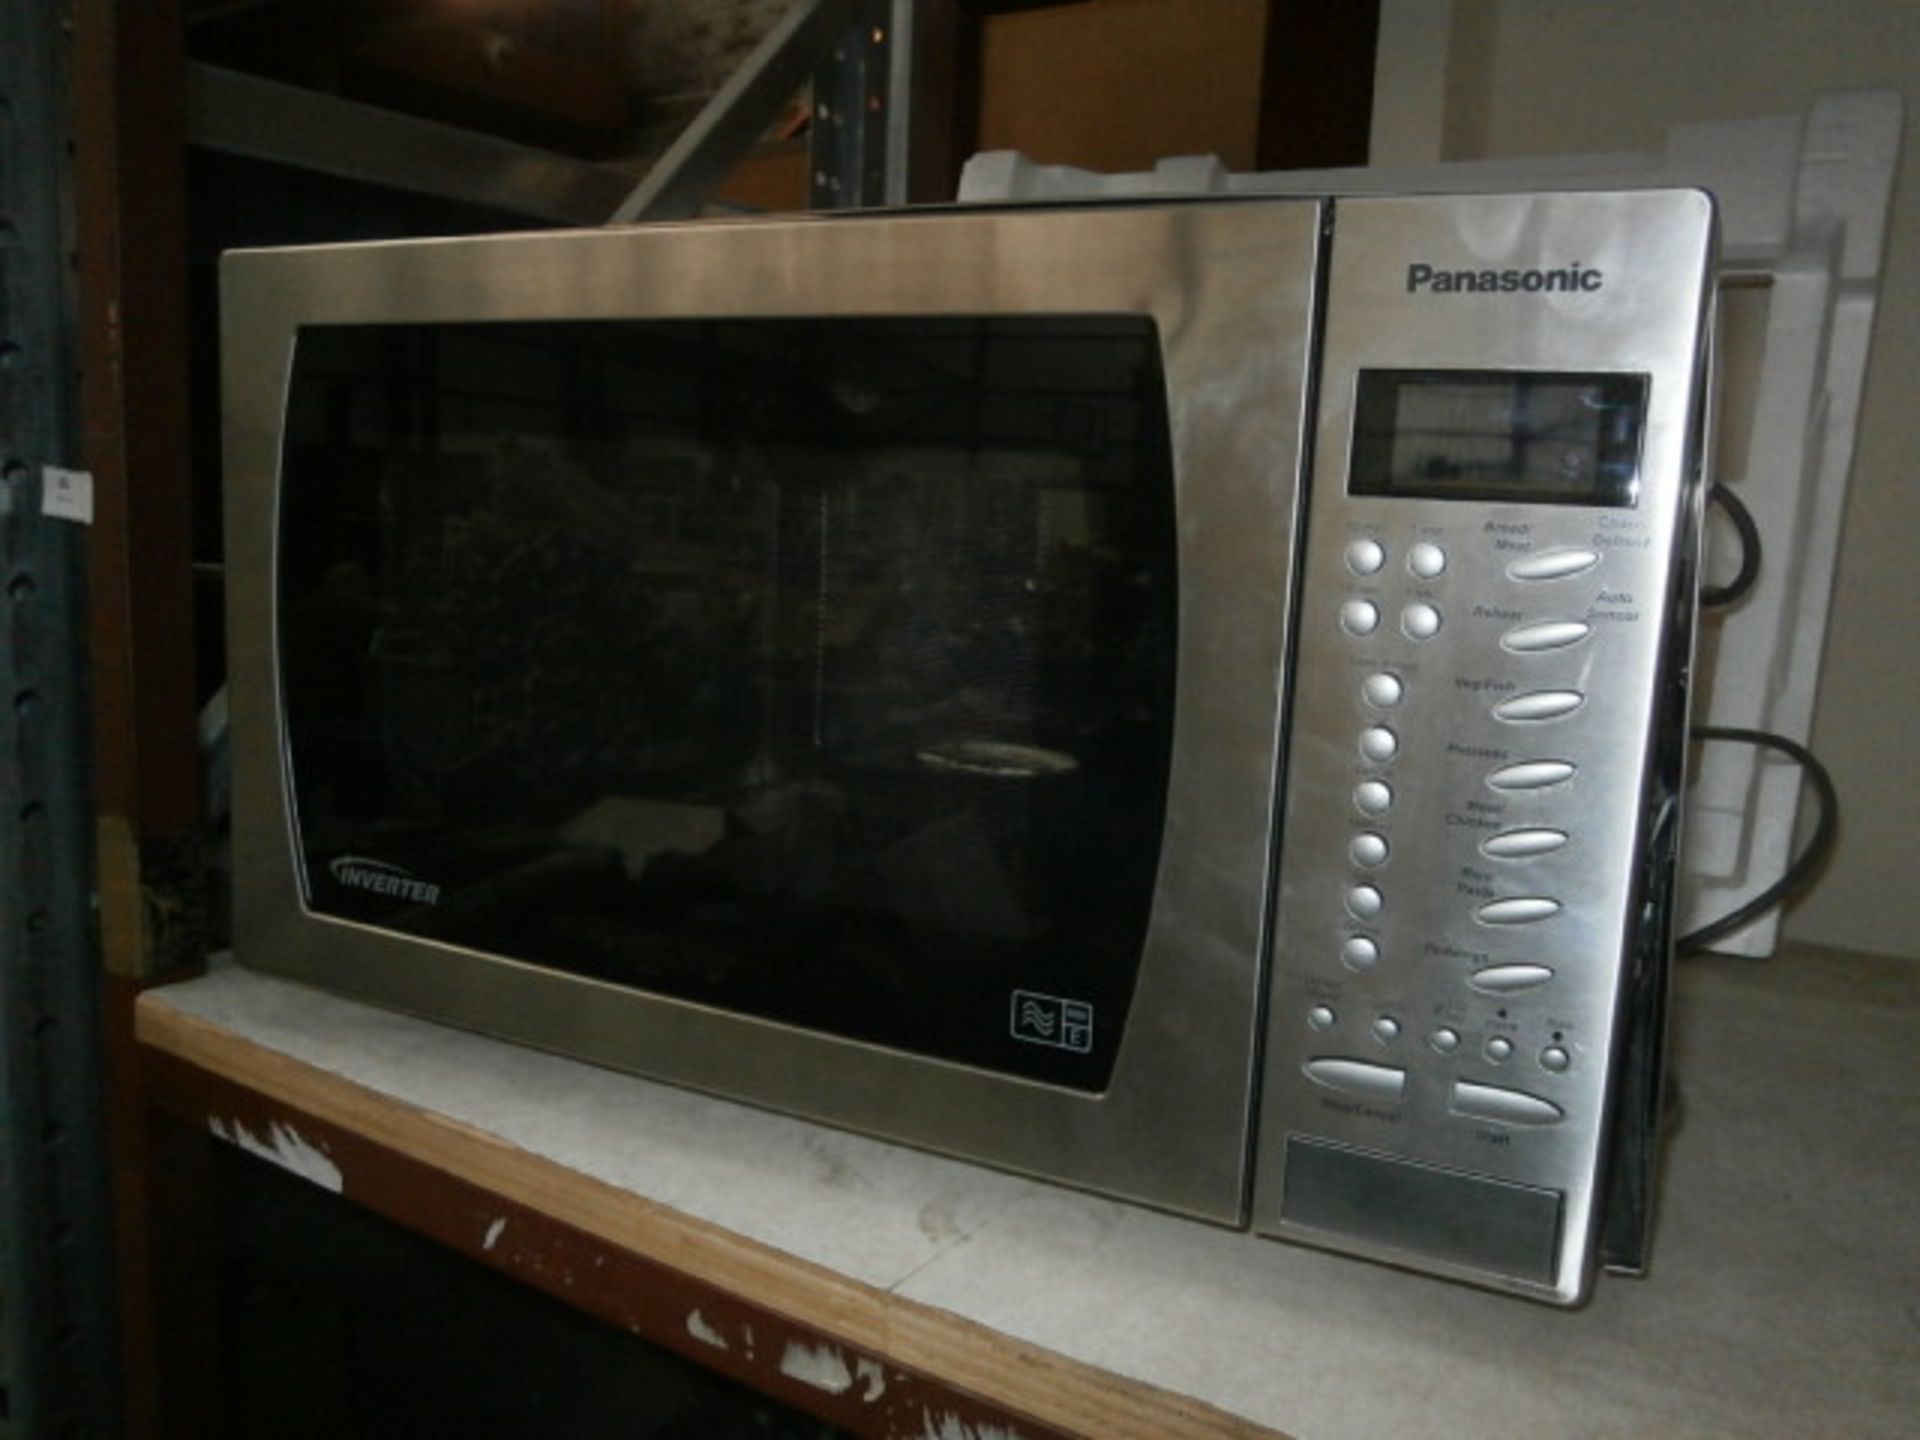 Panasonic digital microwave